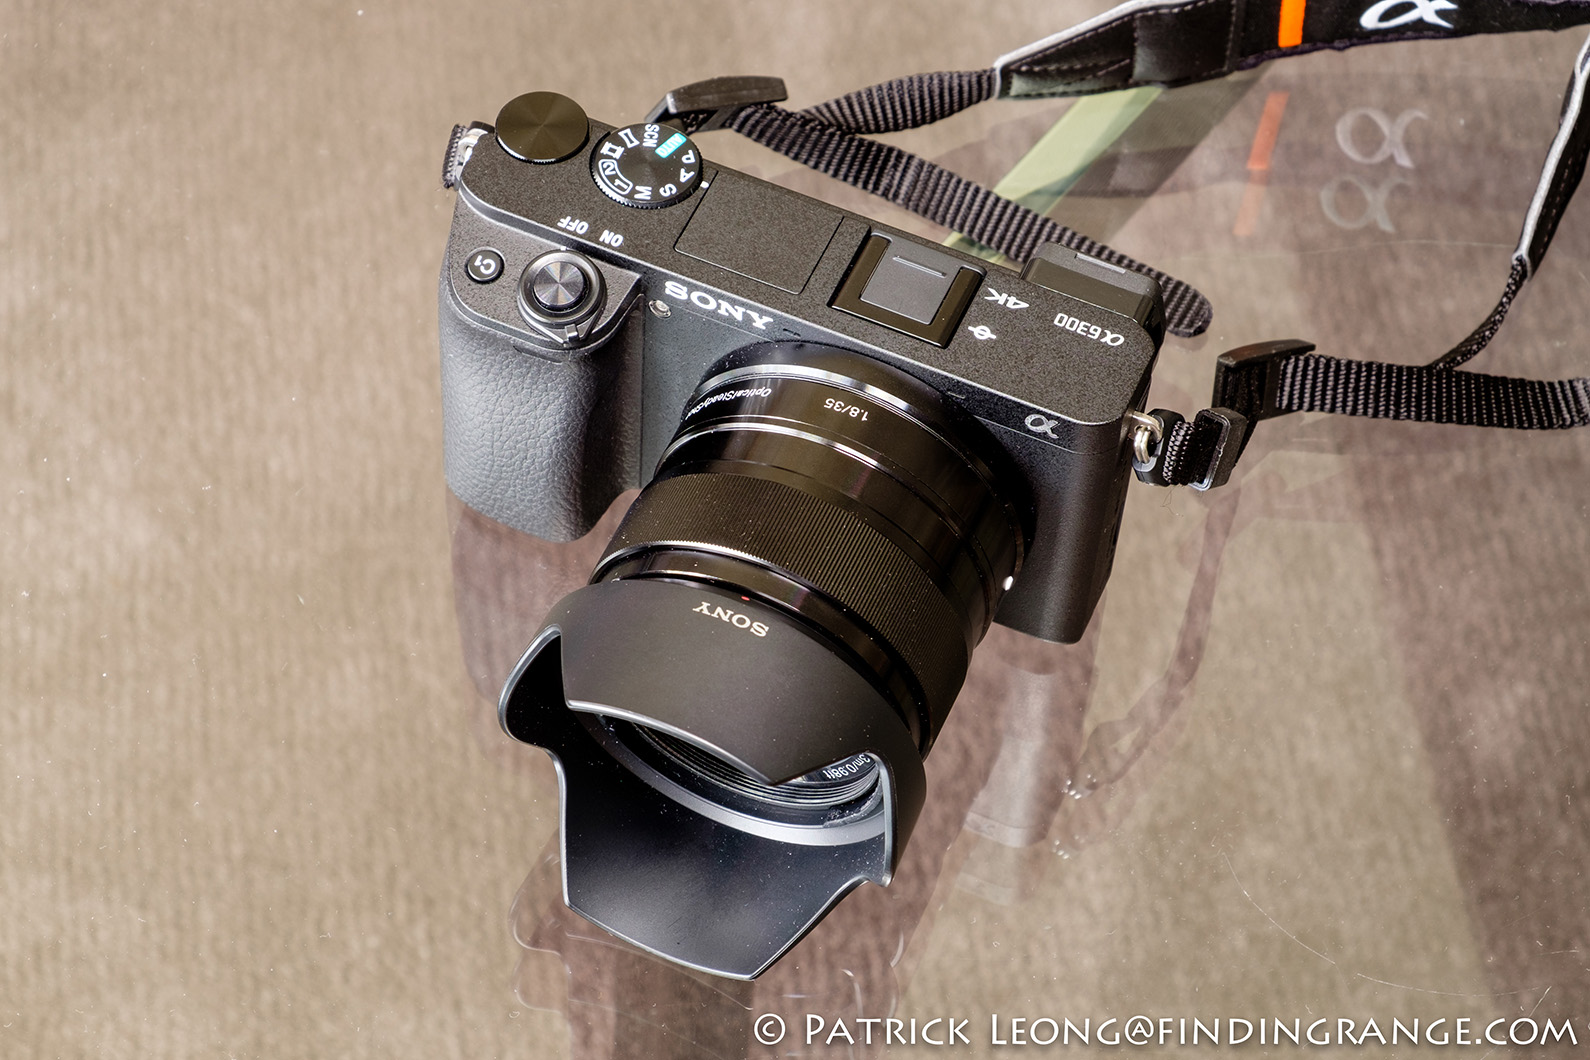 Sony E mm f1.8 OSS Lens Review